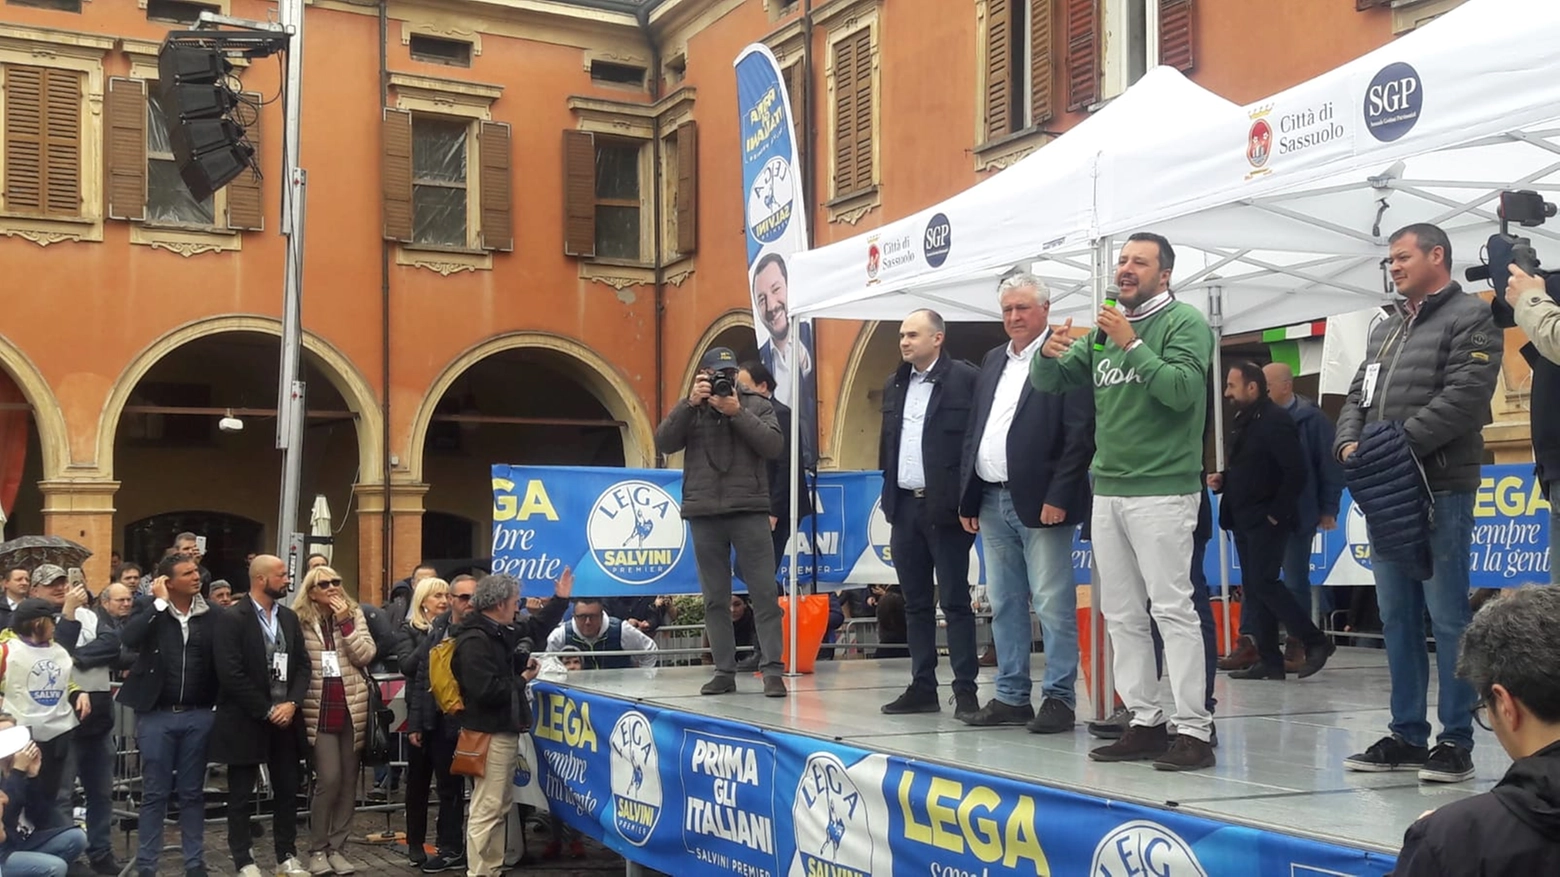 Il ministro dell'Interno e leader della Lega è stato acclamato in piazza, dove è giunto per appoggiare il candidato sassolese Menani